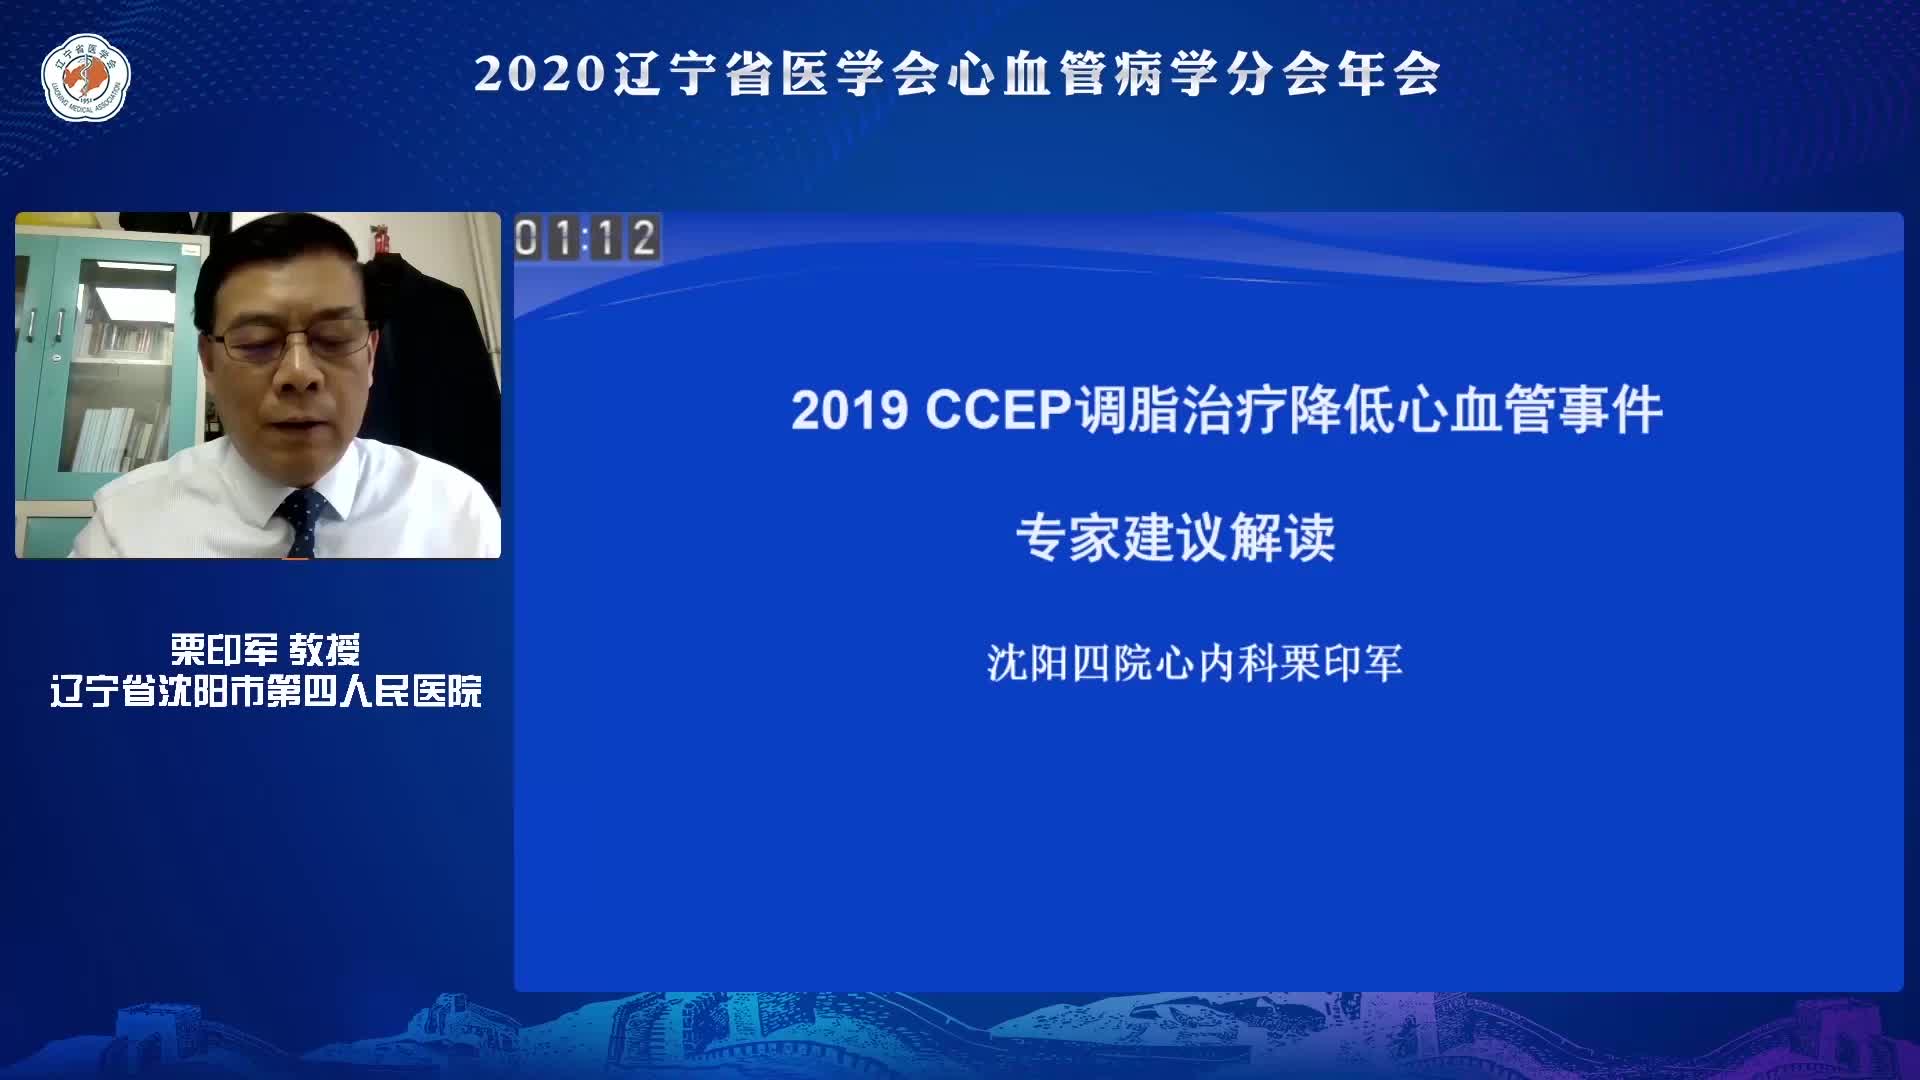 栗印军-2019年CCEP专家共识解读